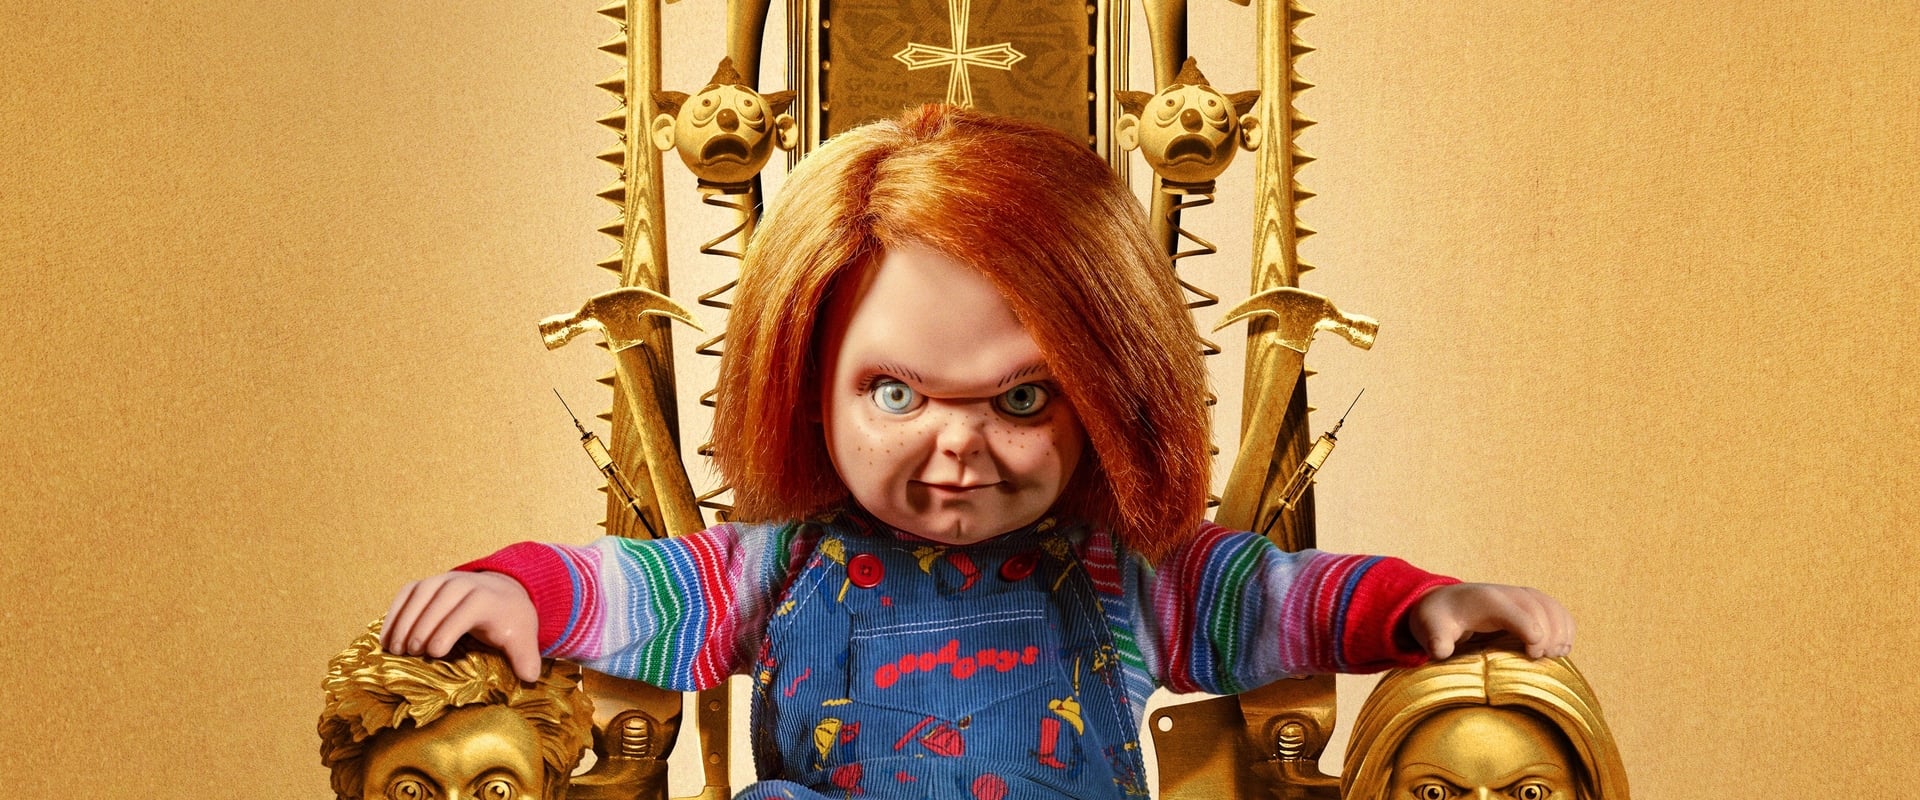 سریال Chucky | چاکی